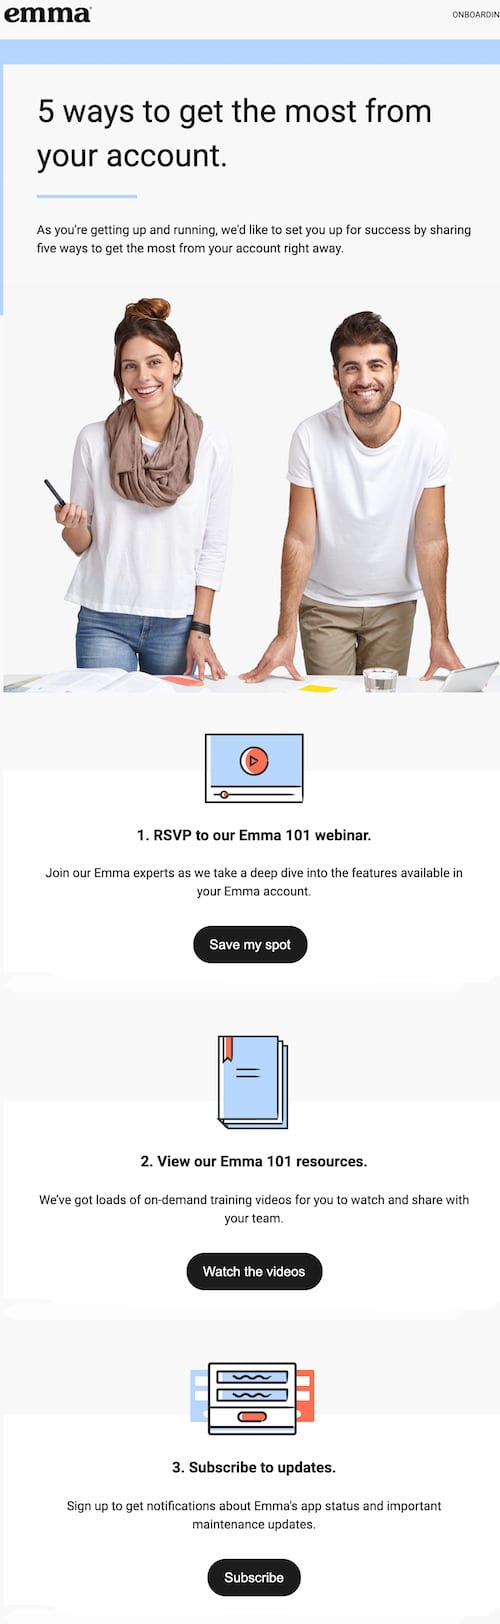 content-based-email-example : Voici un exemple d'e-mail automatisé basé sur le contenu d'Emma.